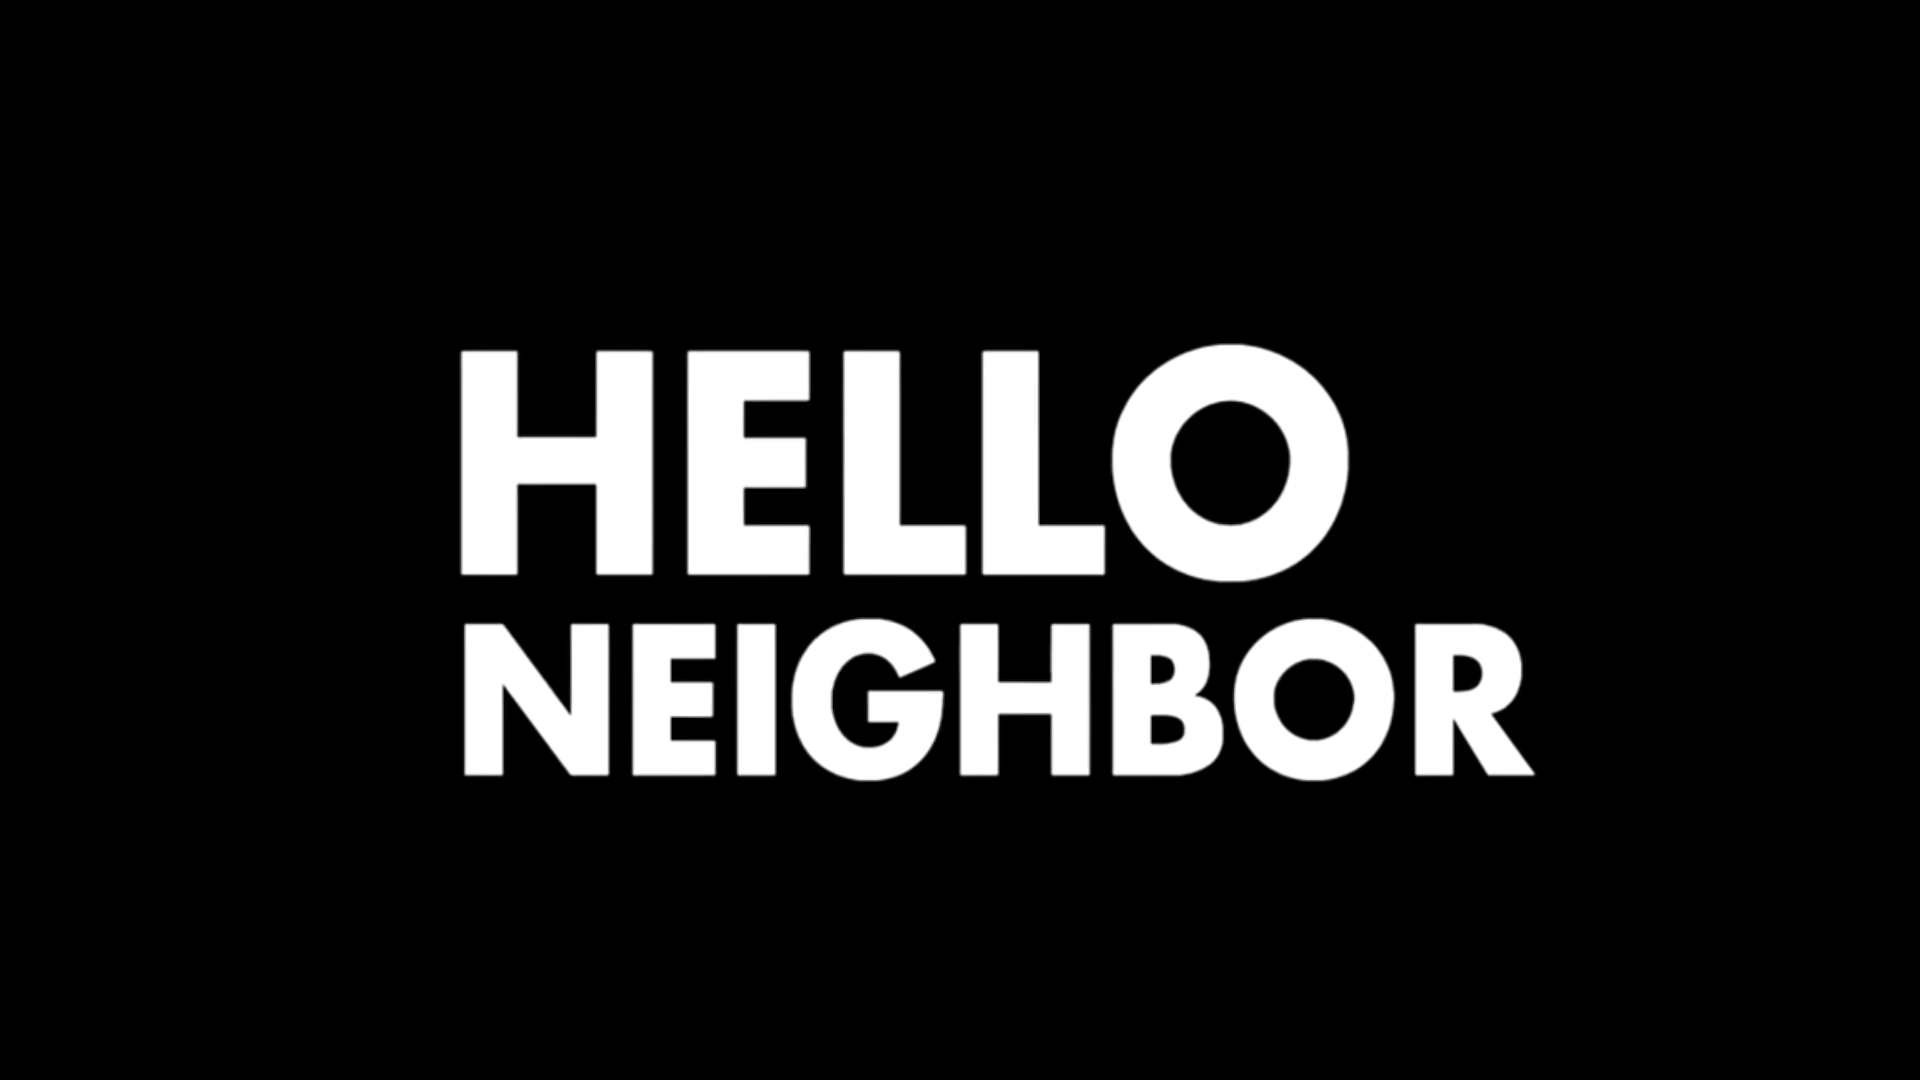 Hello 1 часть. Привет сосед картинки. Hello Neighbor logo. Надпись соседи. Соседи эмблема.